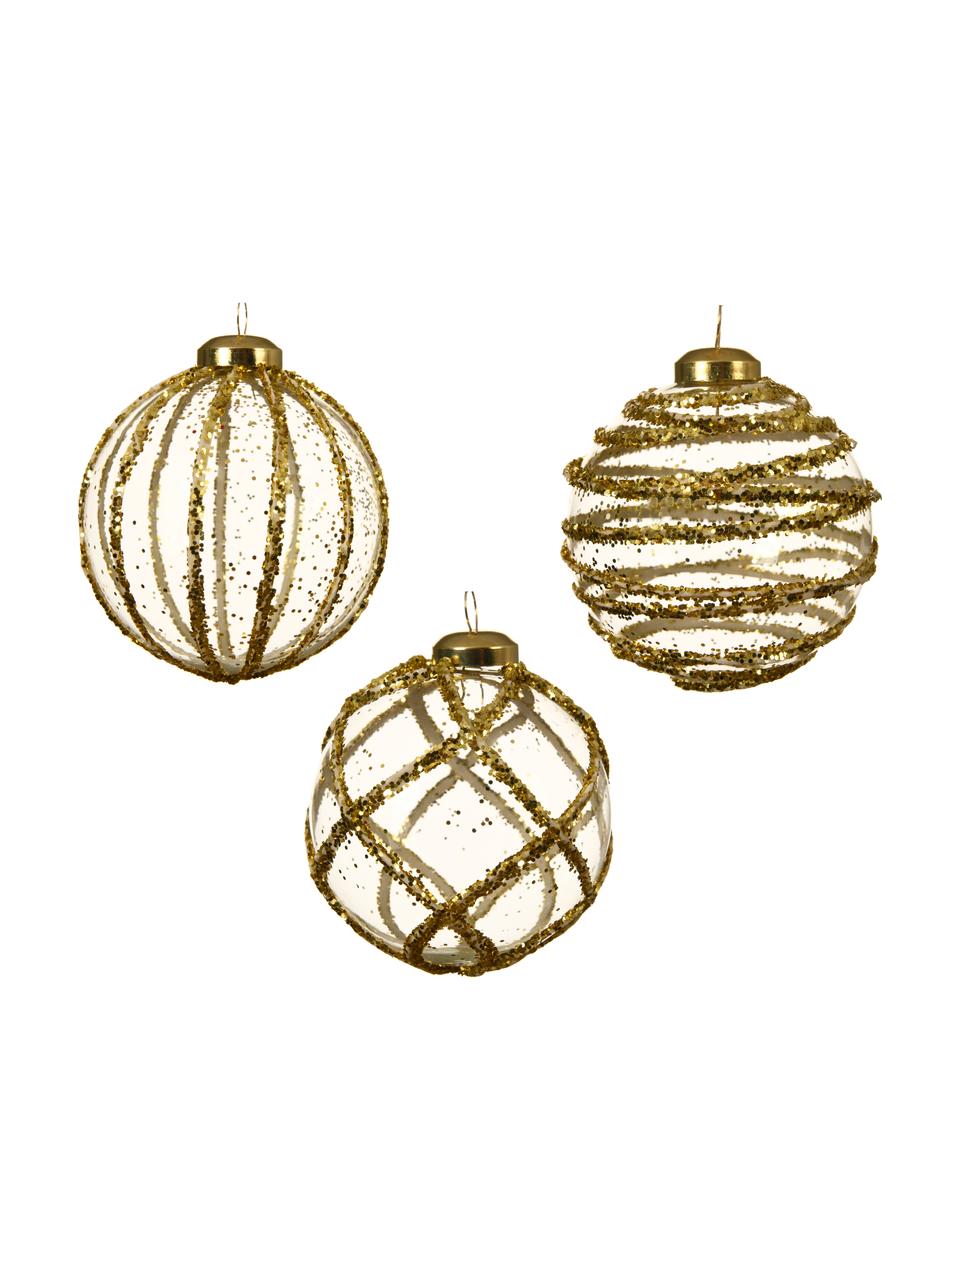 Weihnachtskugeln Circles Ø 8 cm, 3 Stück, Goldfarben, Transparent, Ø 8 cm